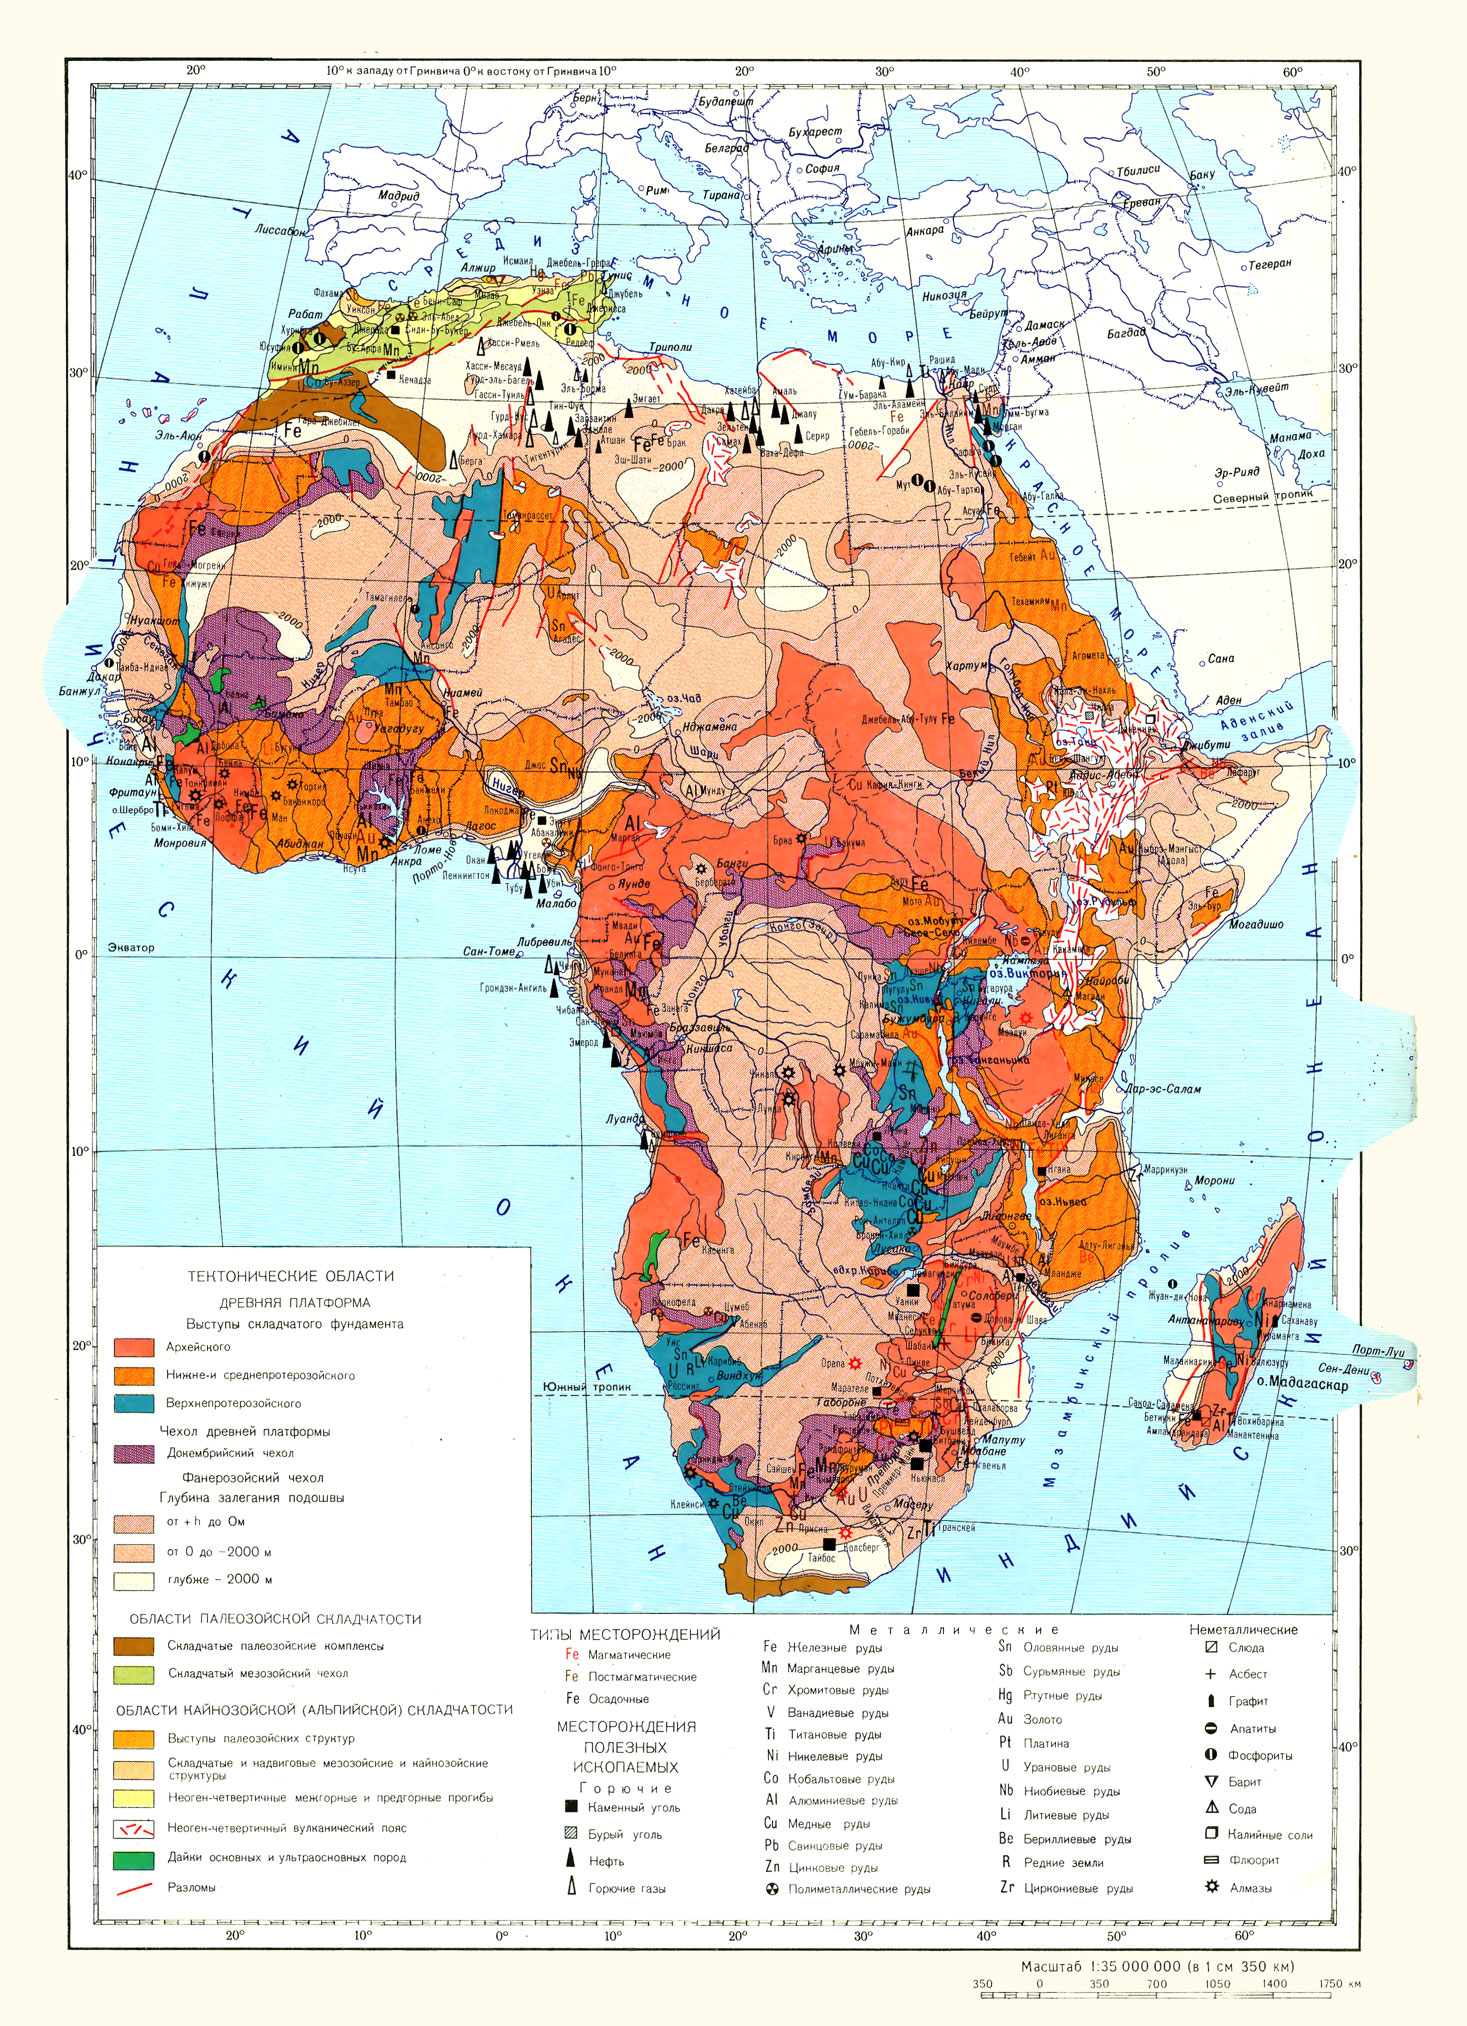 Атлас картинки 7 класс карта африки сусловными обозначениями